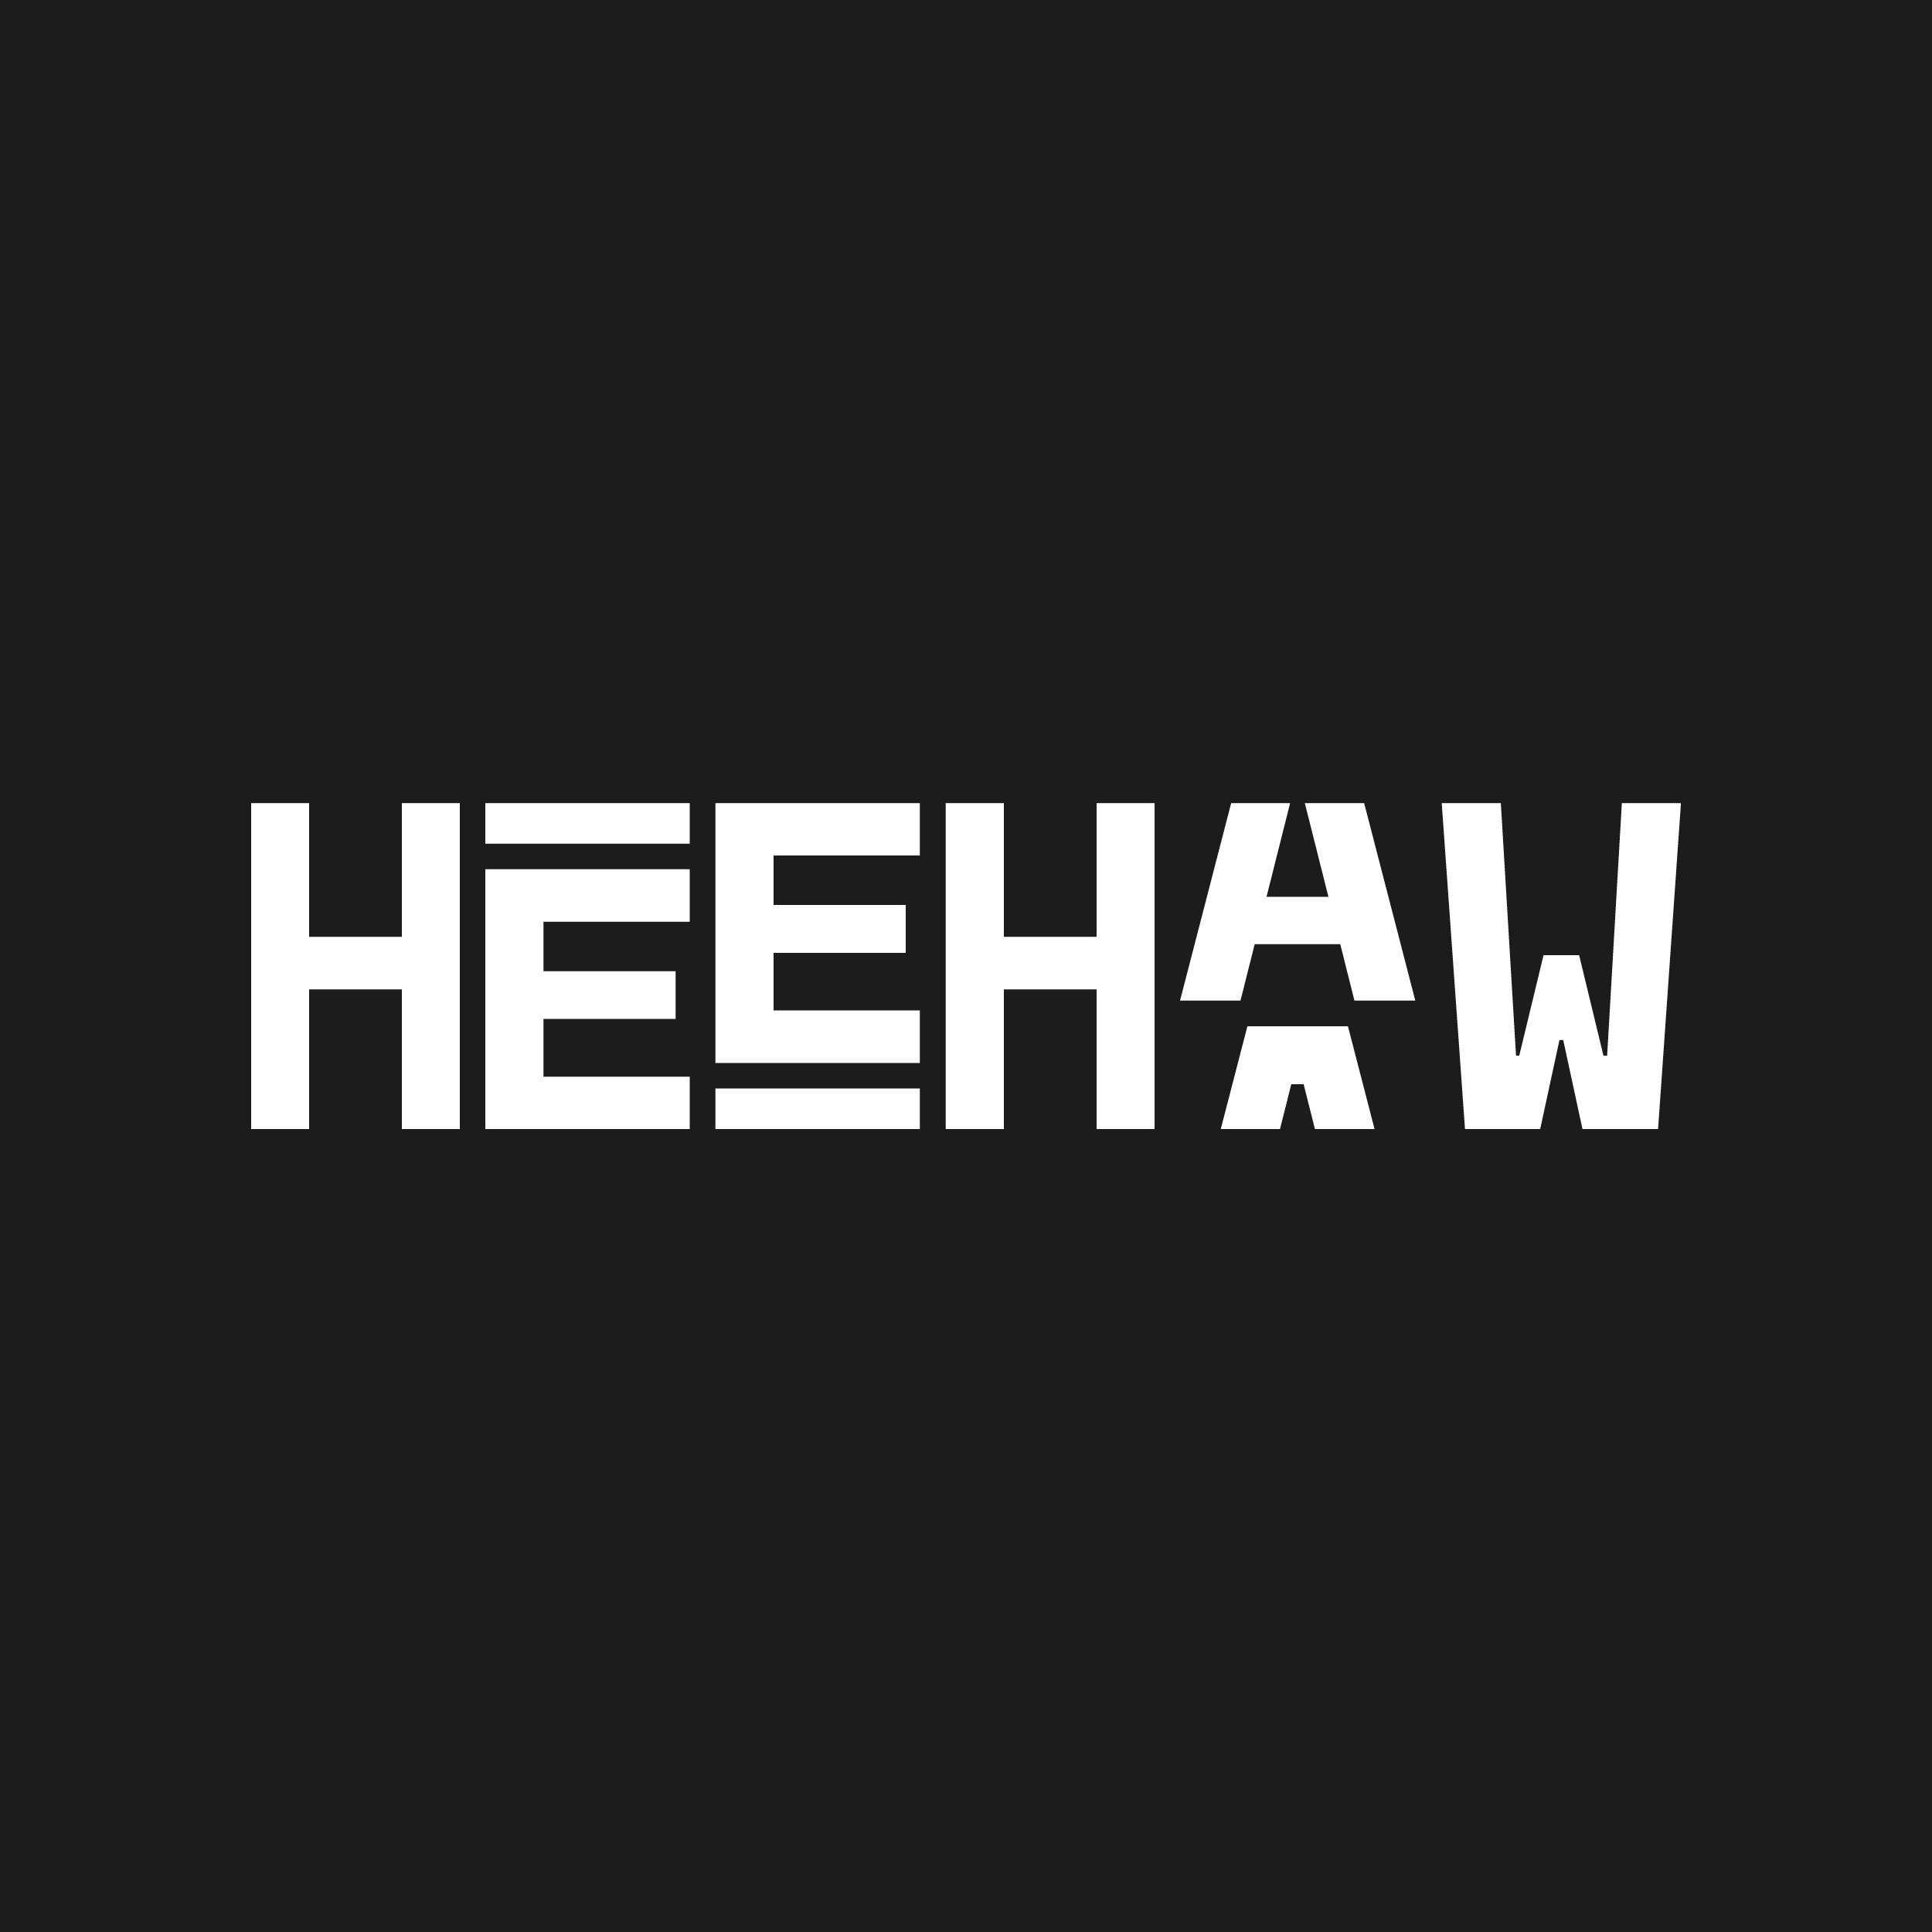 Heehaw